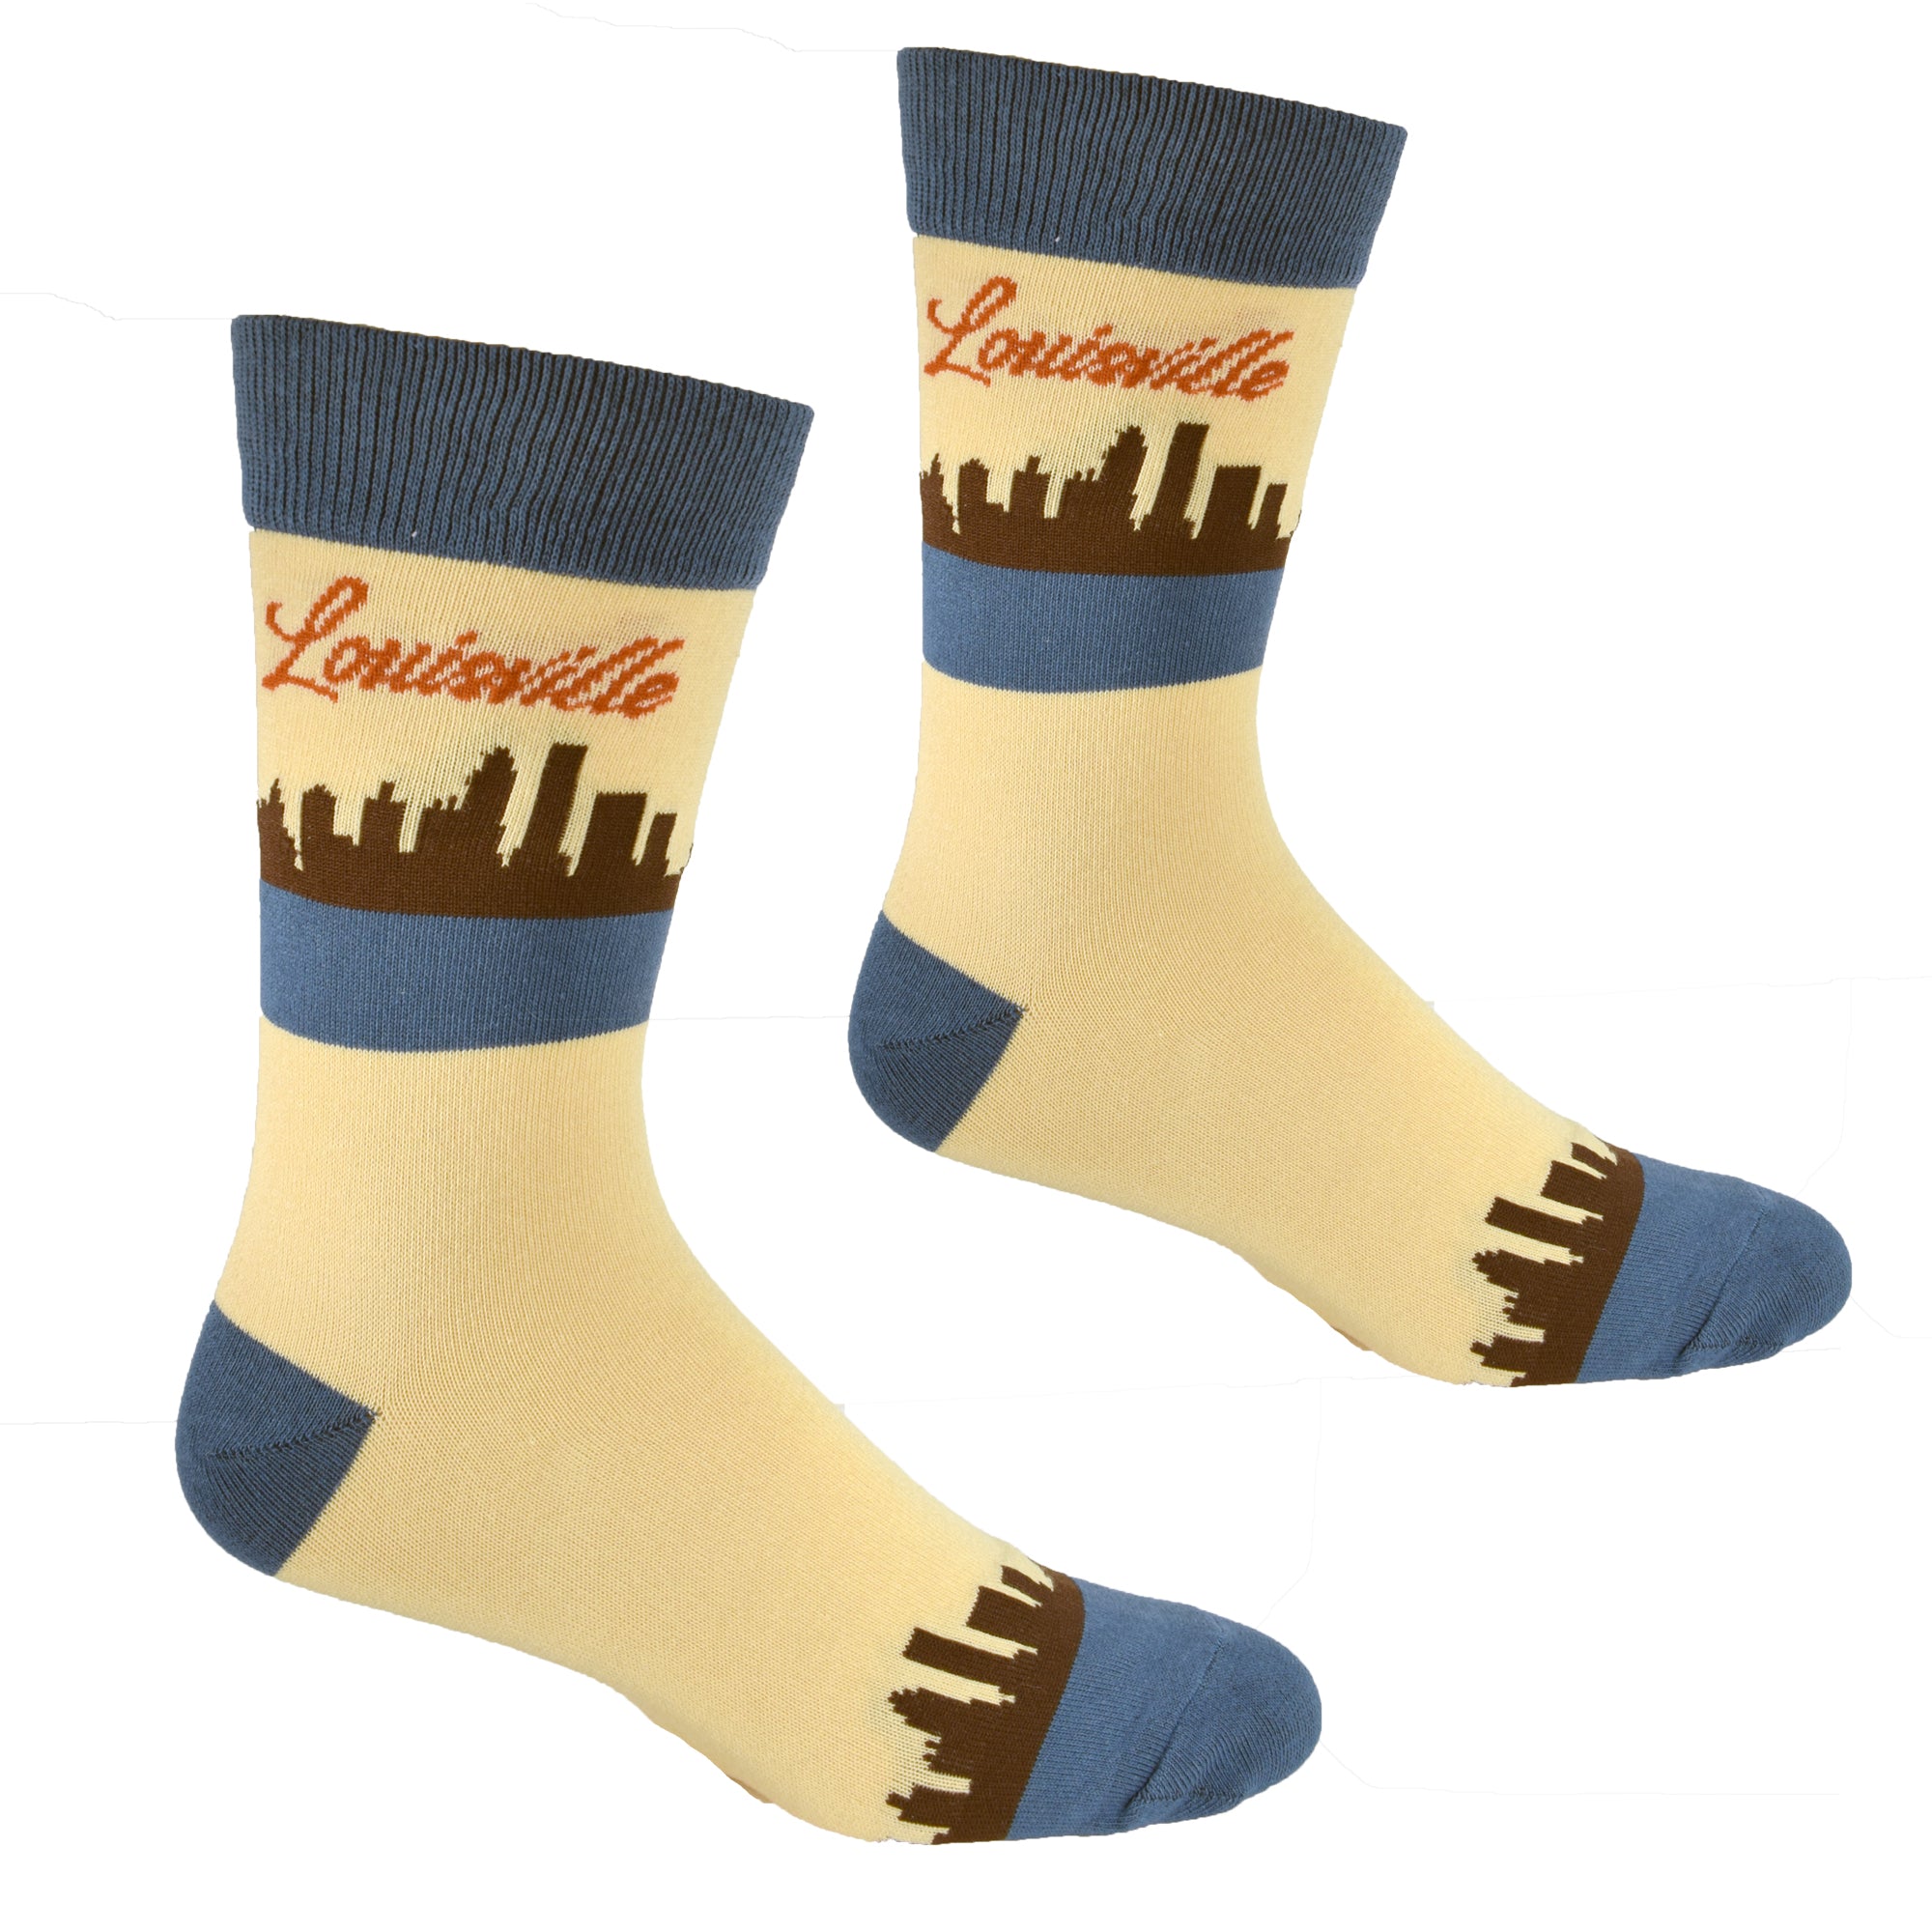 louisville socks